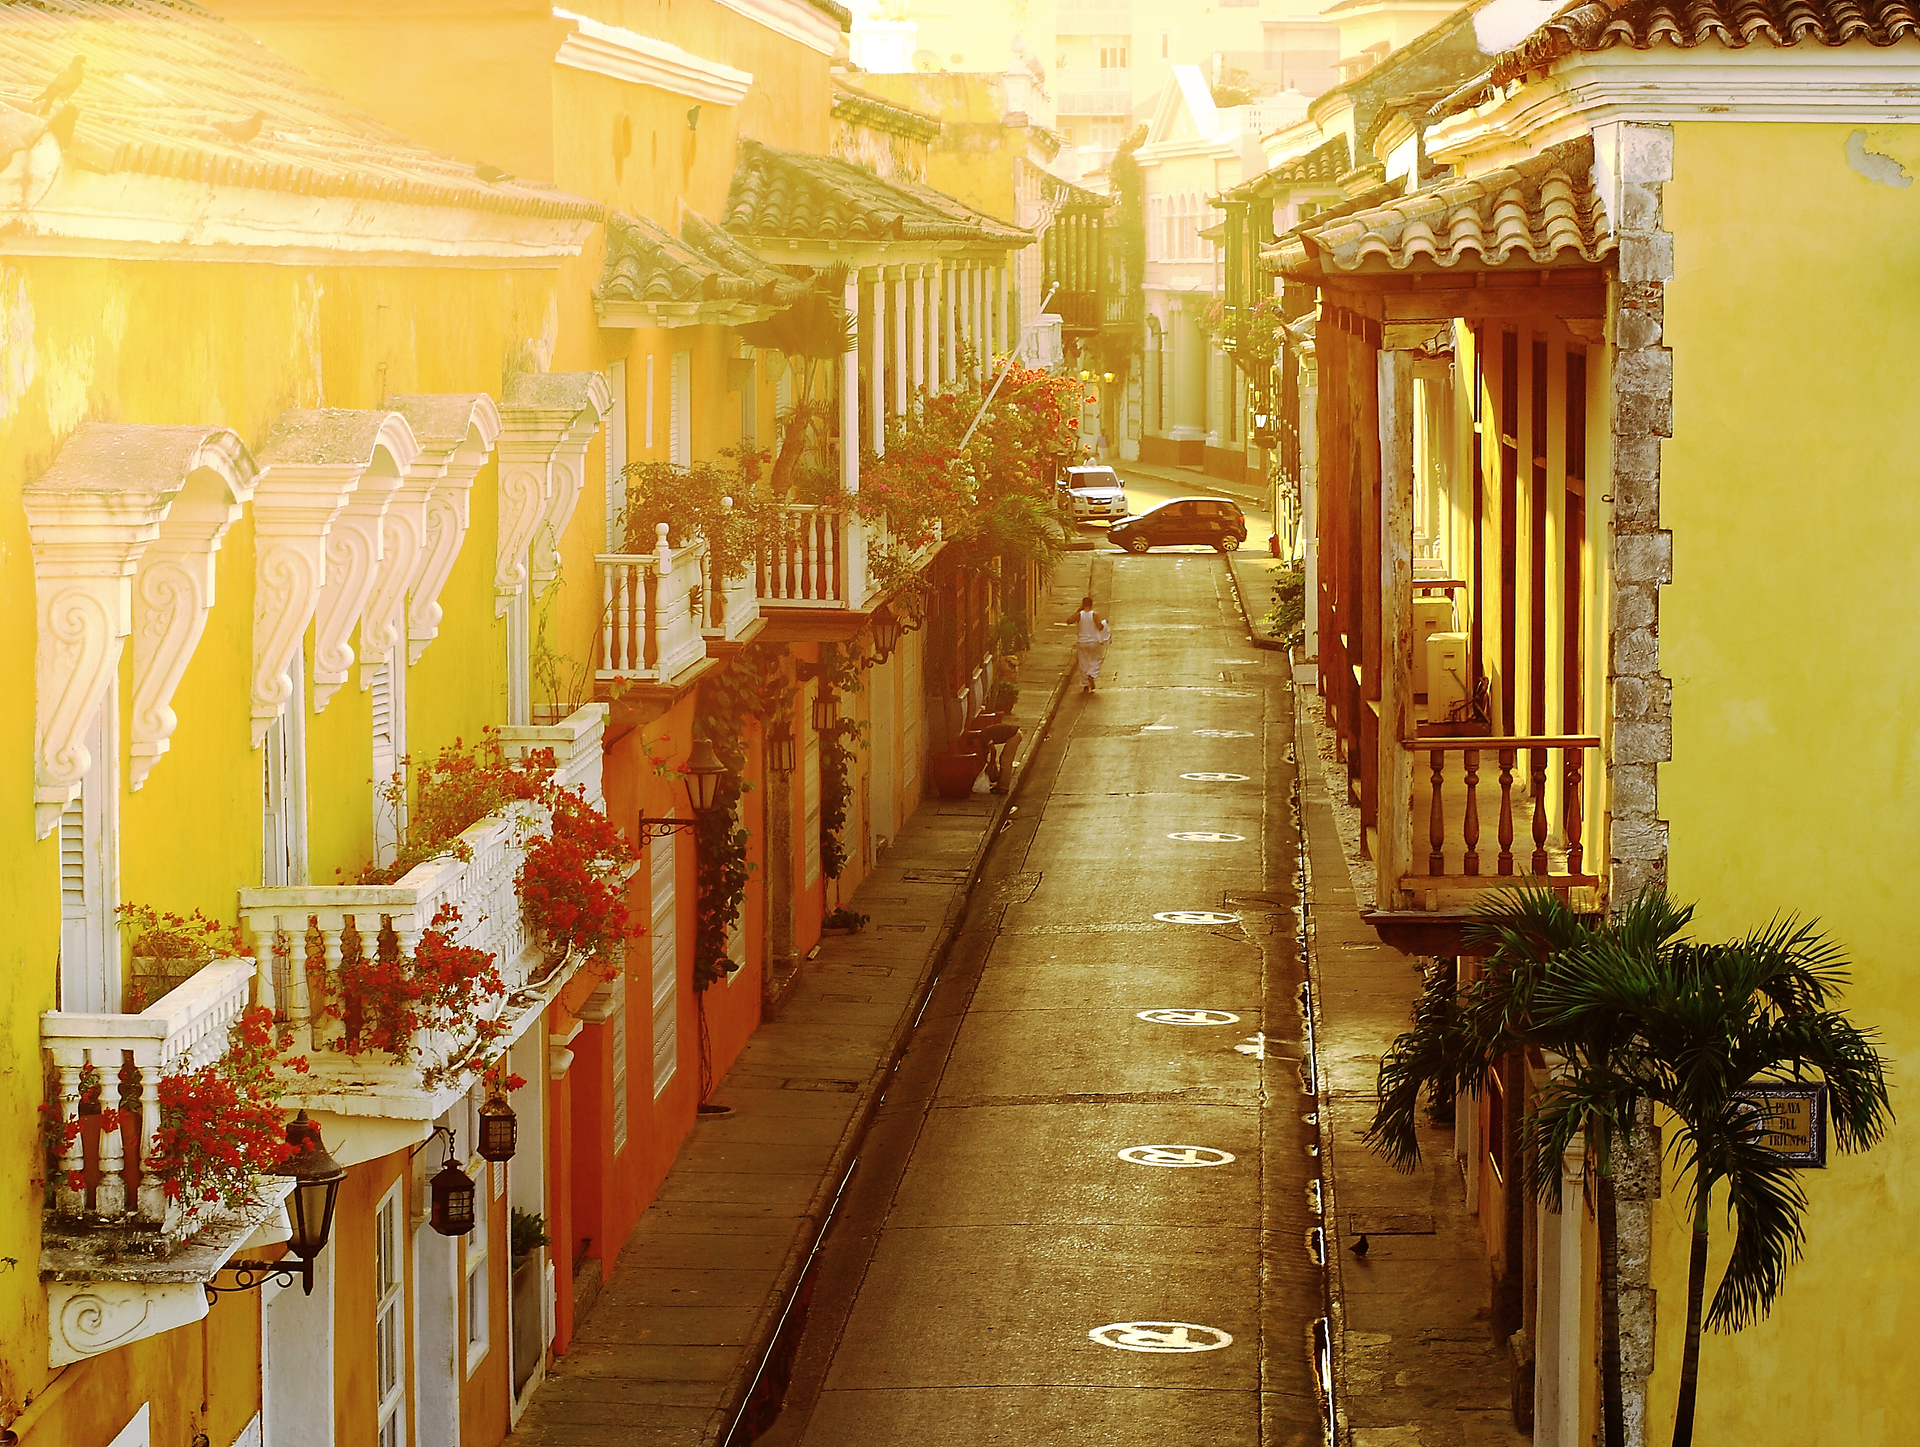 Cartagena vale a pena? Confira nosso mini guia com dicas de quando ir e o que fazer